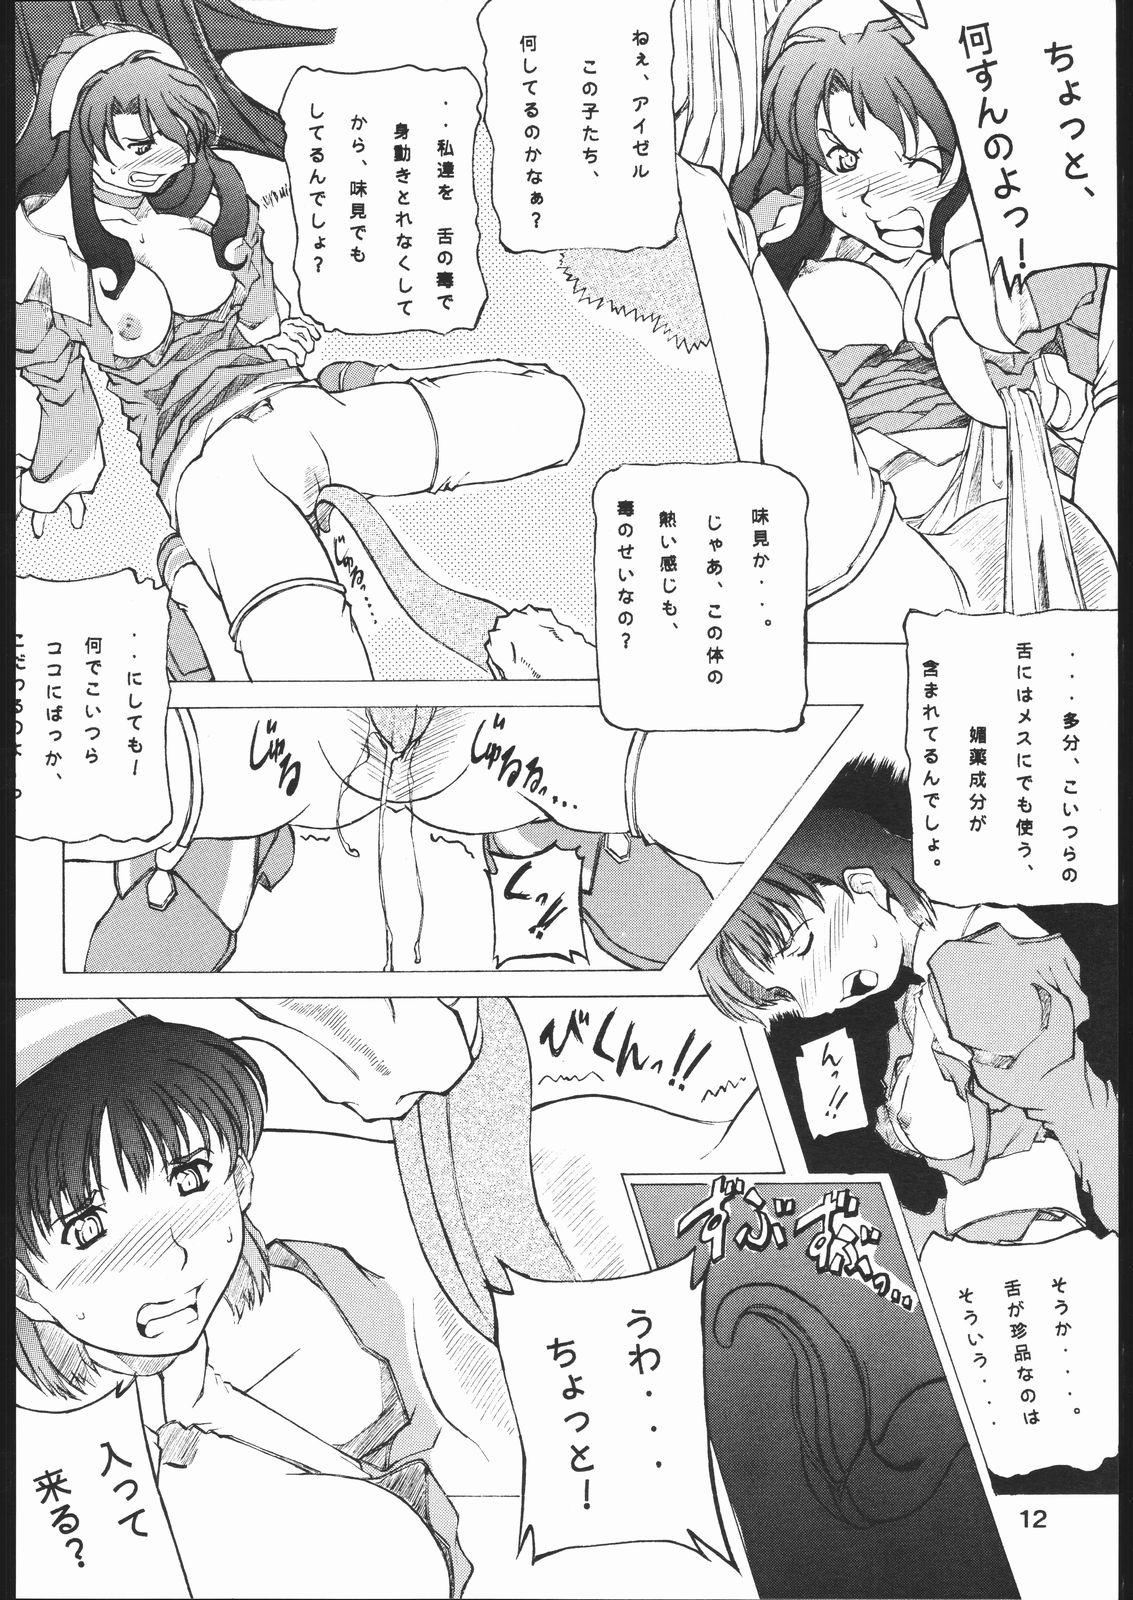 Mallu yoru no renkinjyutsu Chica - Page 11